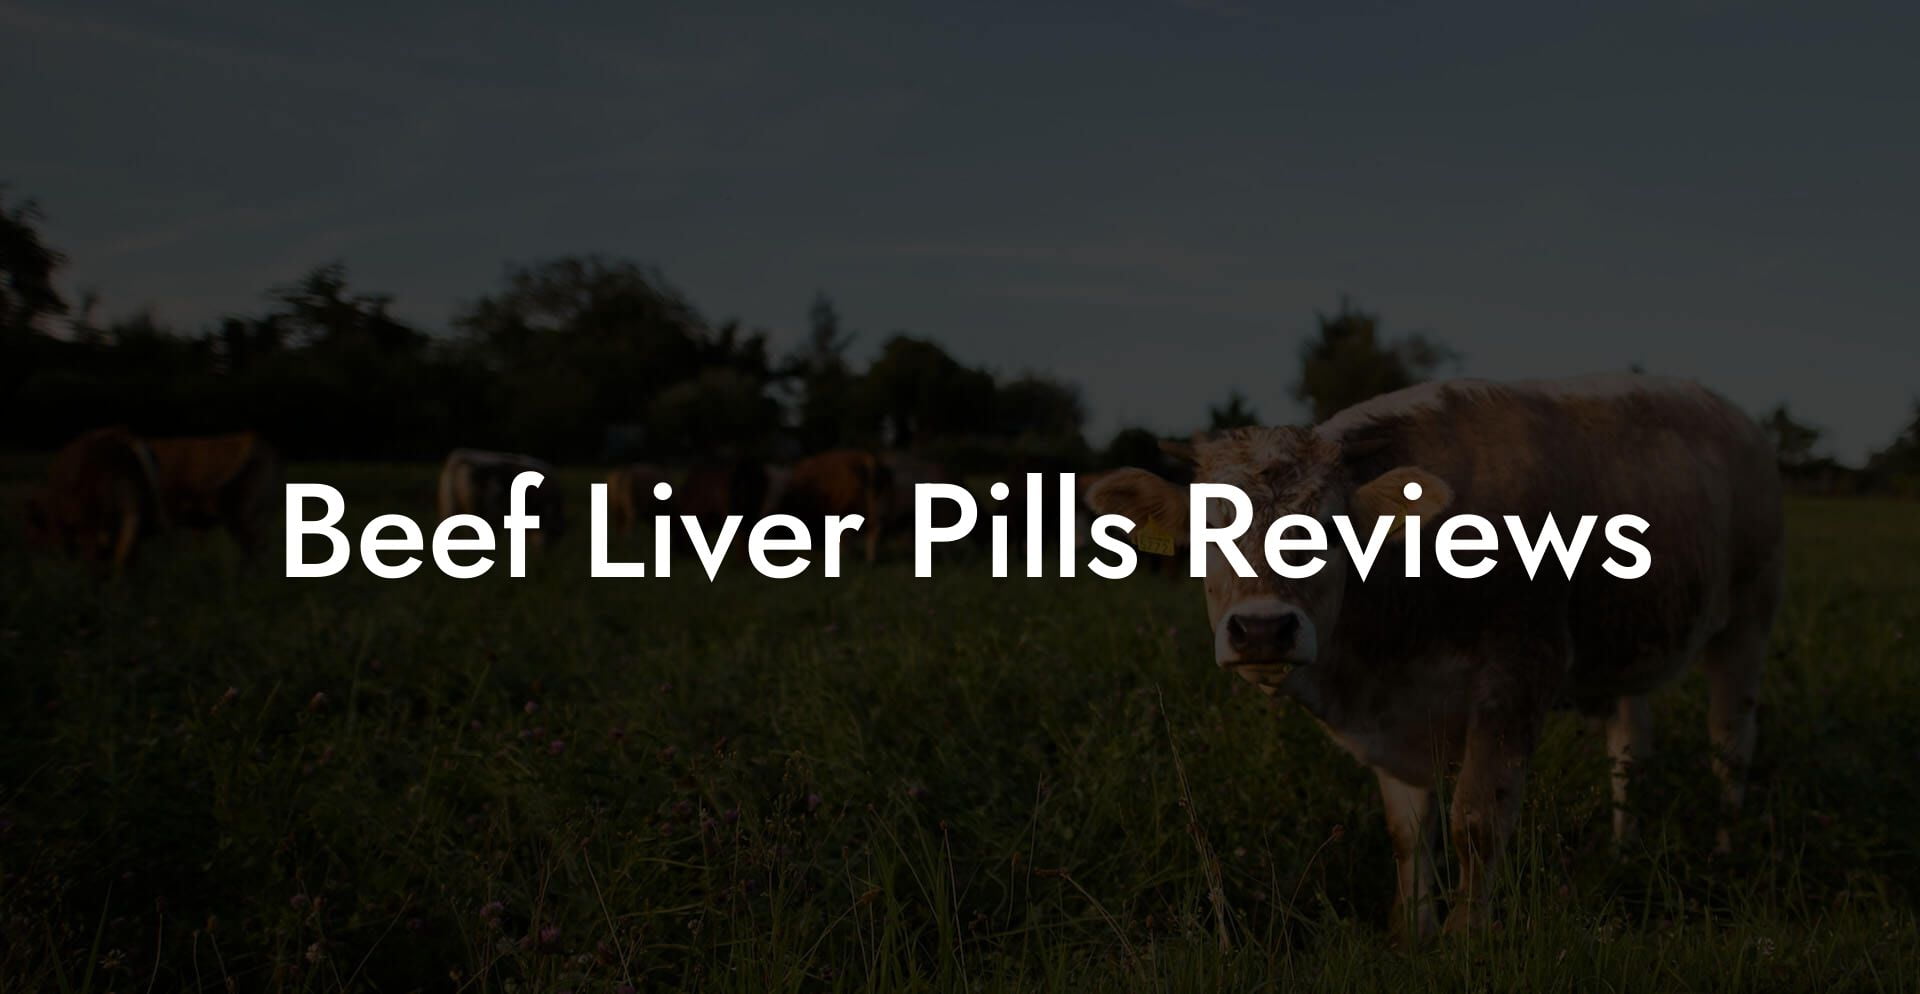 Beef Liver Pills Reviews